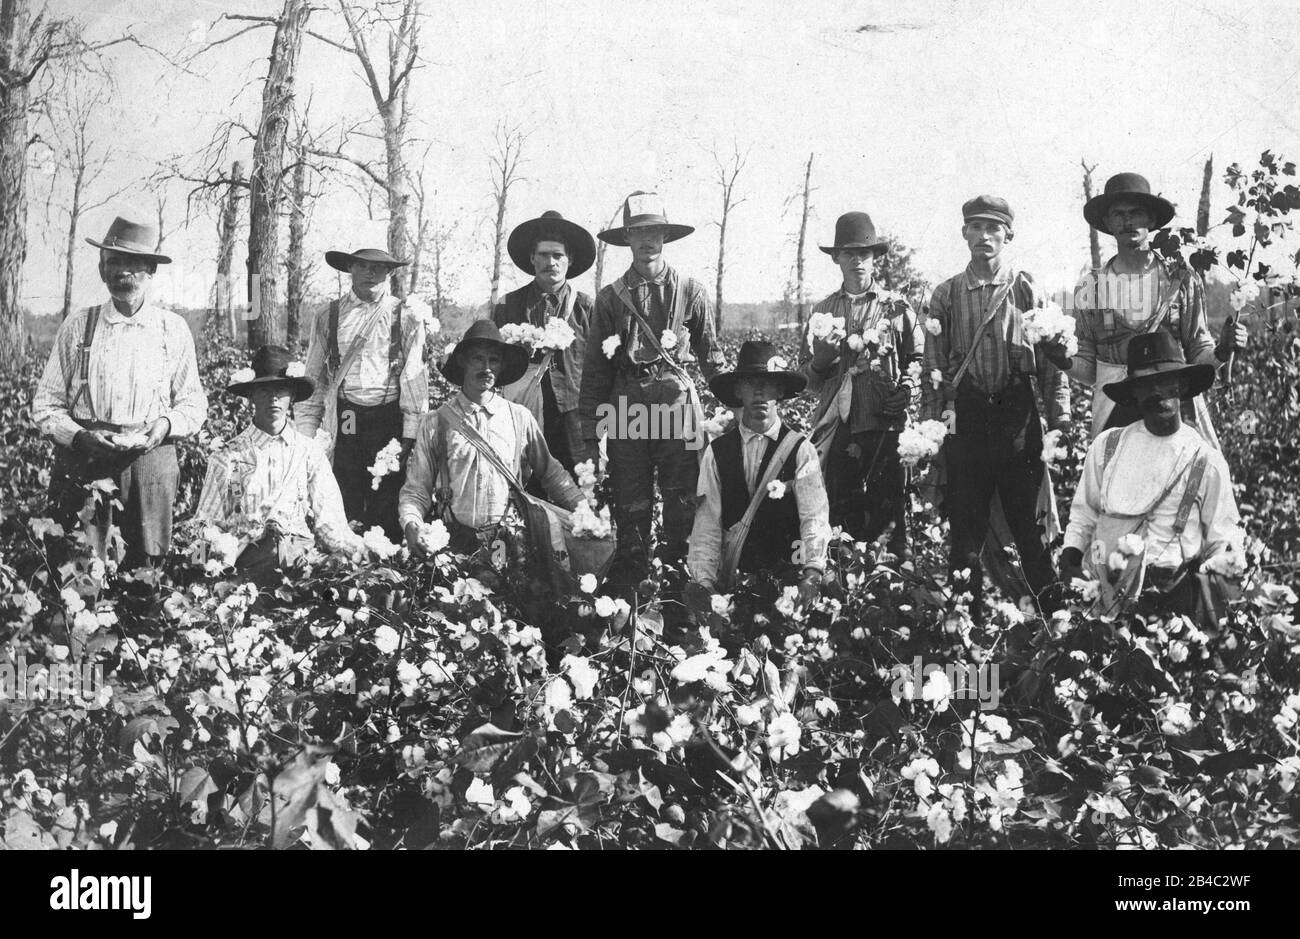 Pickers en coton blanc, 11 hommes adultes. C'était au milieu des années 1890  ou plus tôt. Le dos de la photo l'identifie comme « scène coton. Près De  Wagoner. Territoire indien »